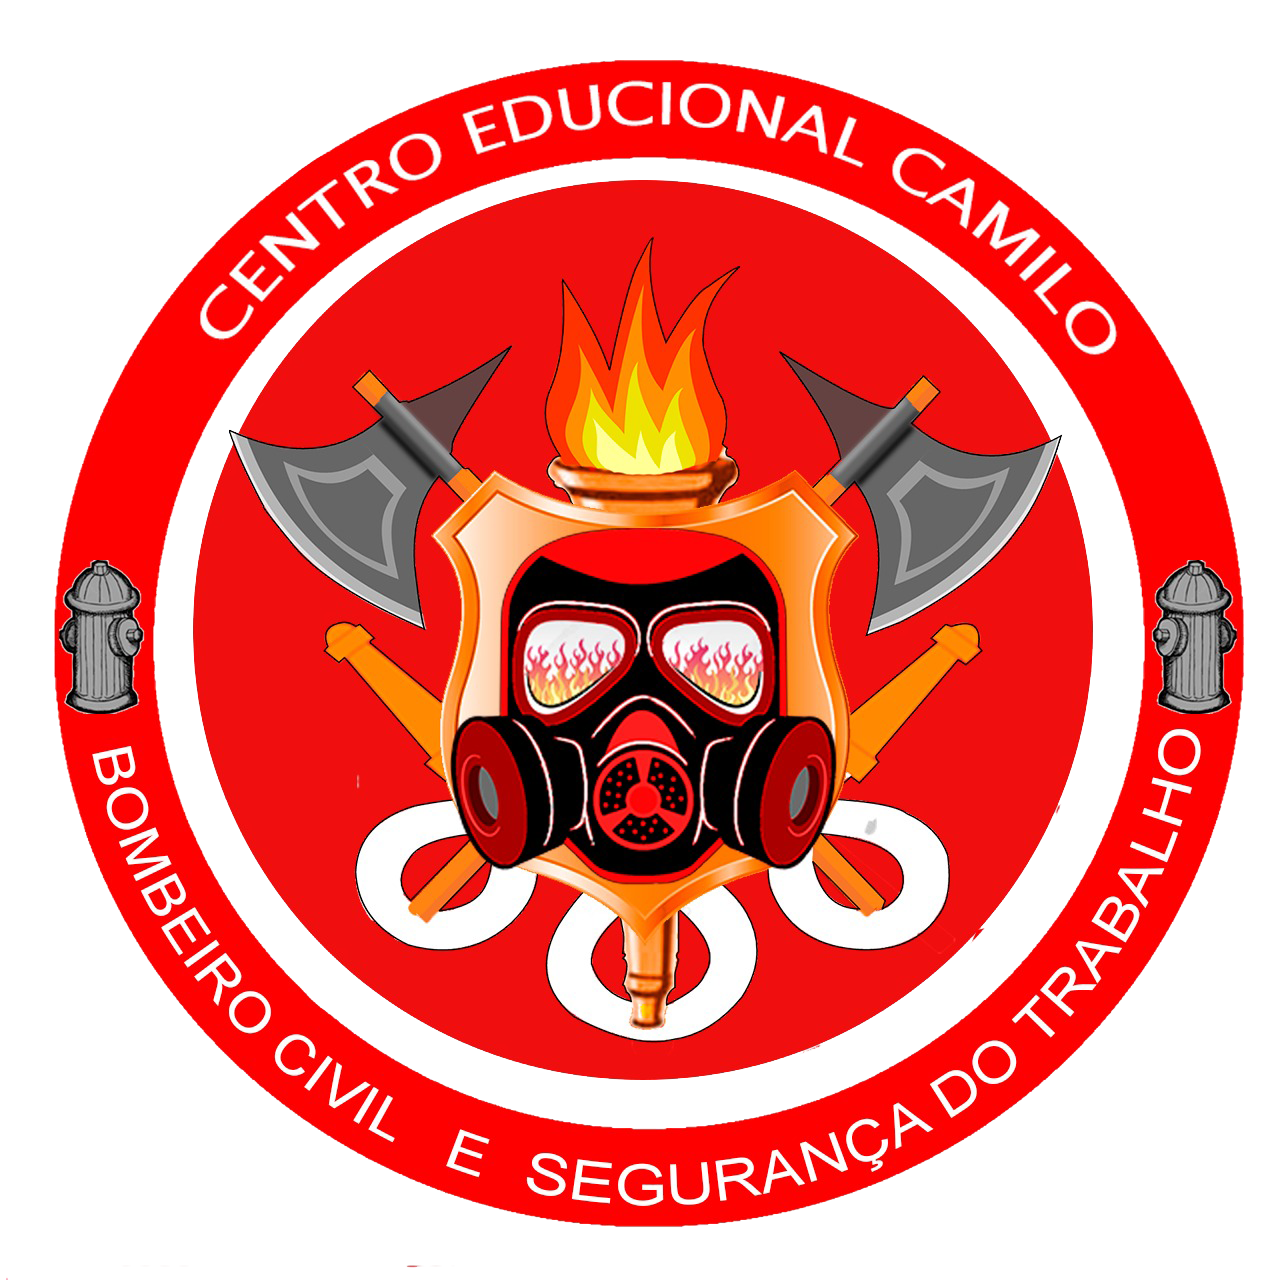 Melhor Centro de Formação de SP. Credenciado pelo Corpo de Bombeiros. -  BOMBEIRO CIVIL